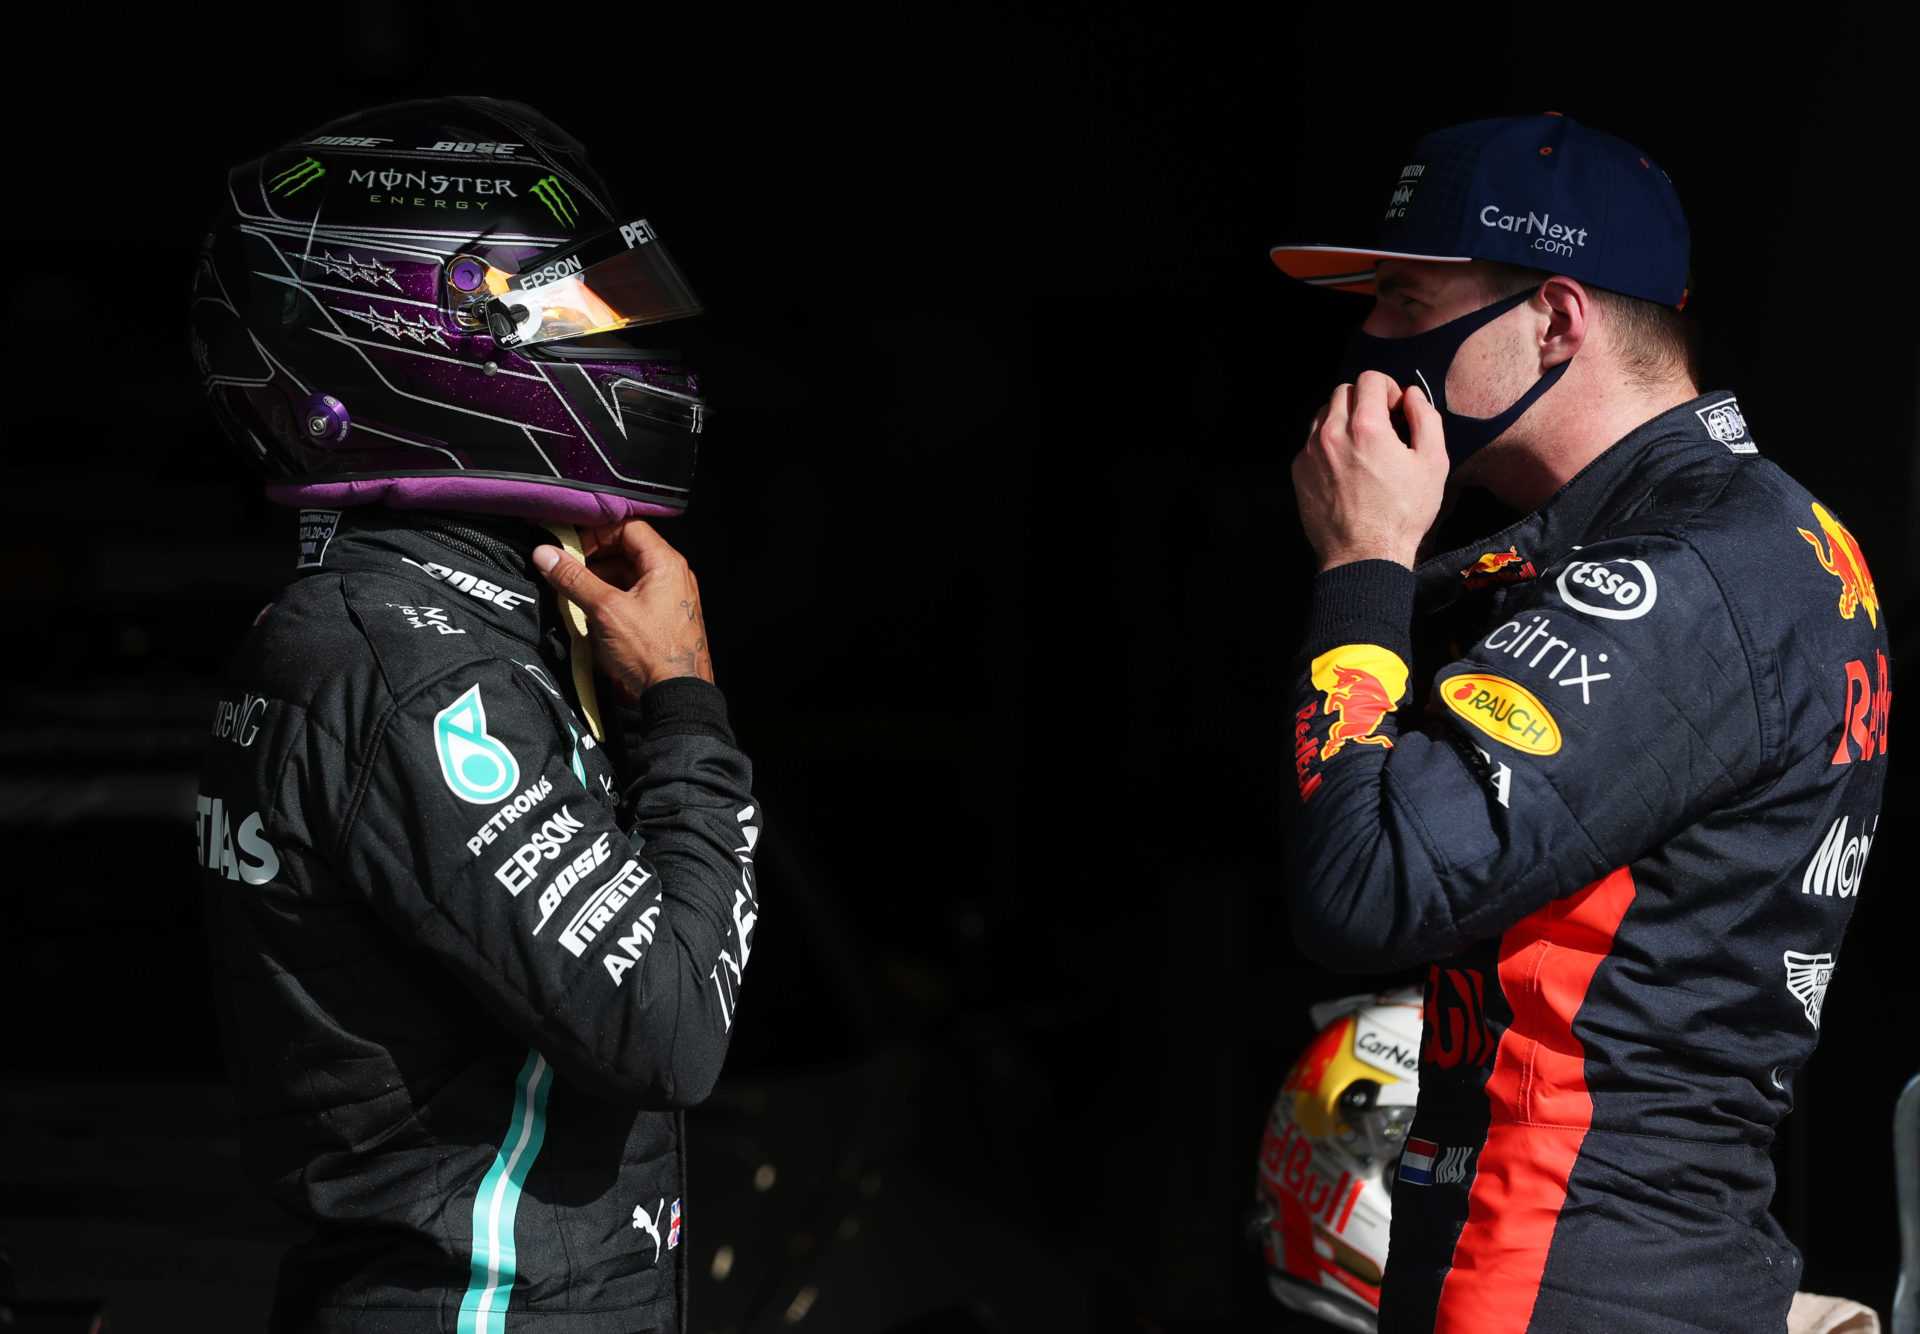 Schumacher contredit les affirmations de Marko selon lesquelles Max Verstappen serait plus rapide que Lewis Hamilton sur une saison complète